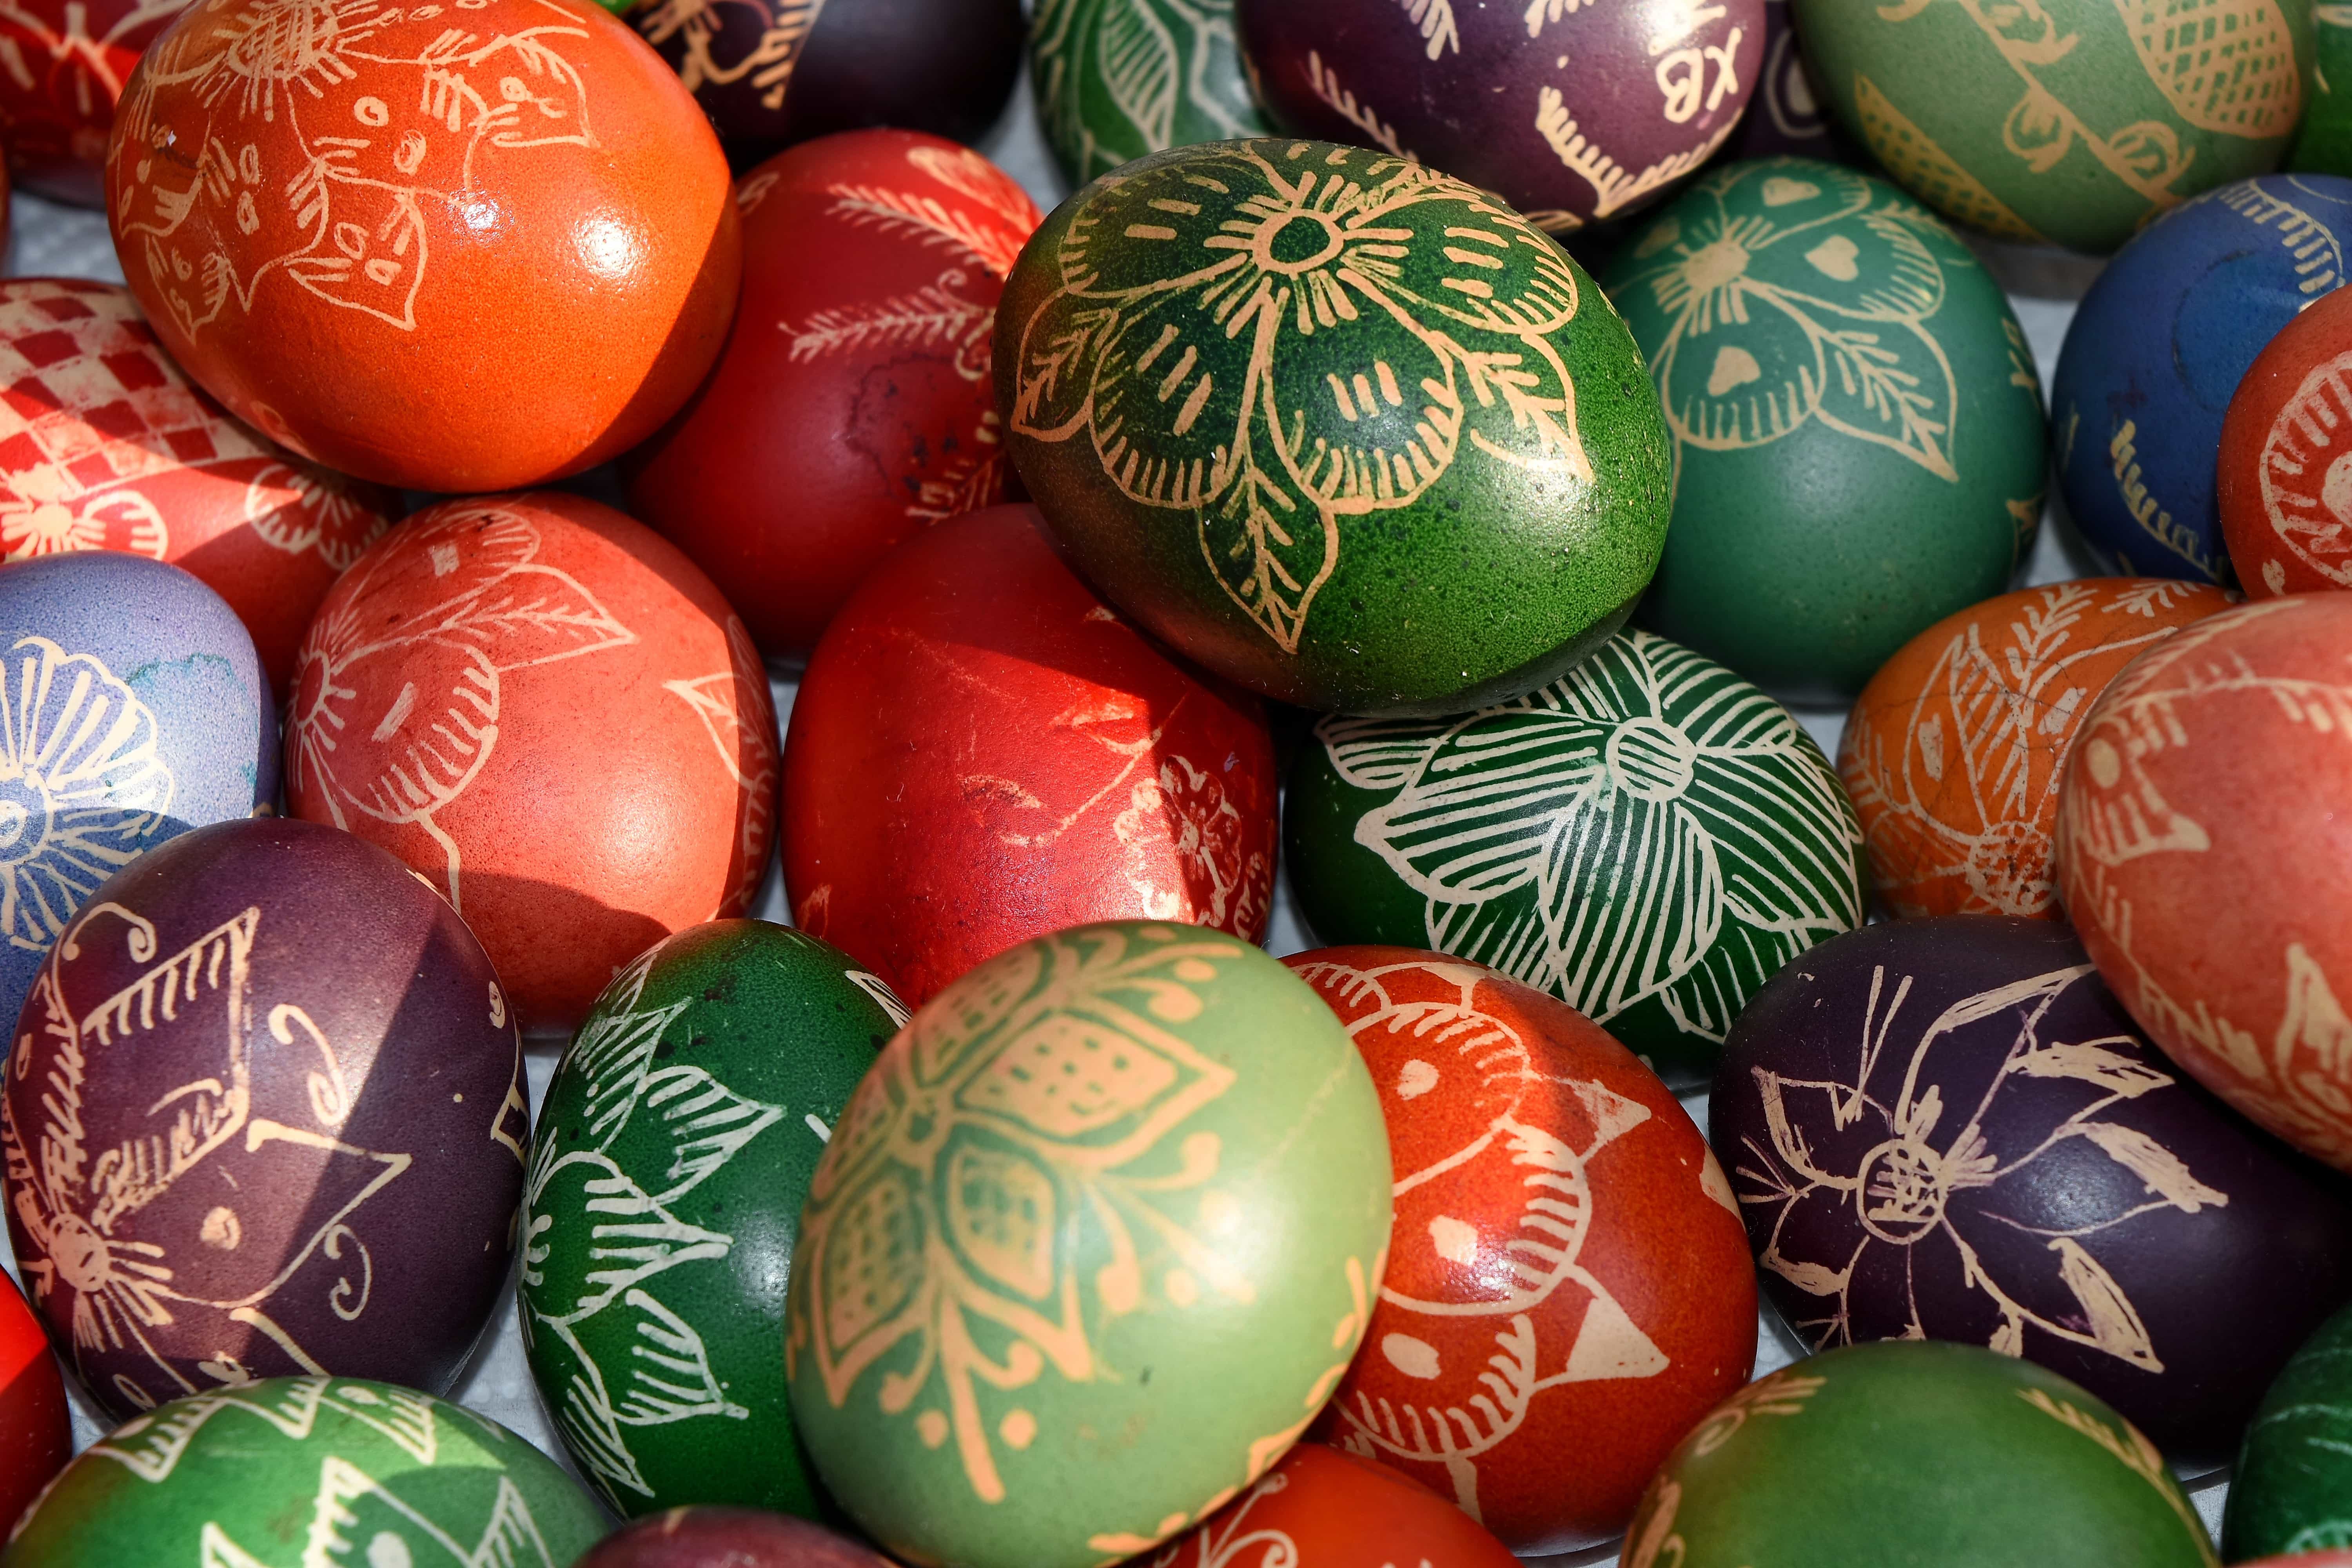 Ilmainen kuva: kristinusko, loma, muna, Pääsiäinen, sisustus, juhla,  perinteinen, paistaa